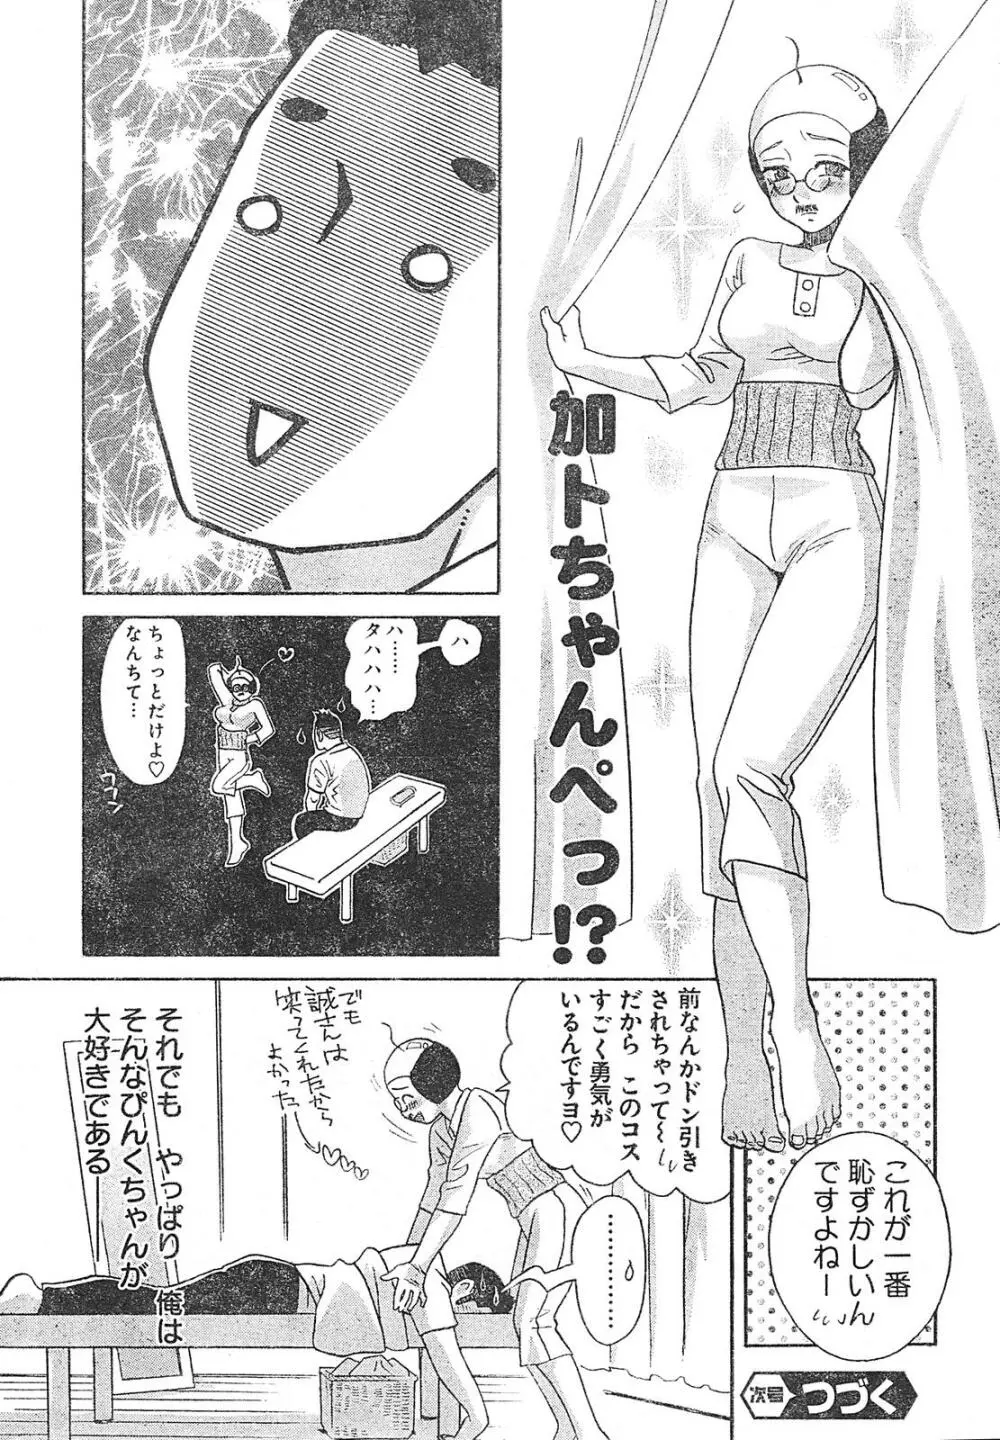 ヤングチャンピオン烈 Vol.01 22ページ